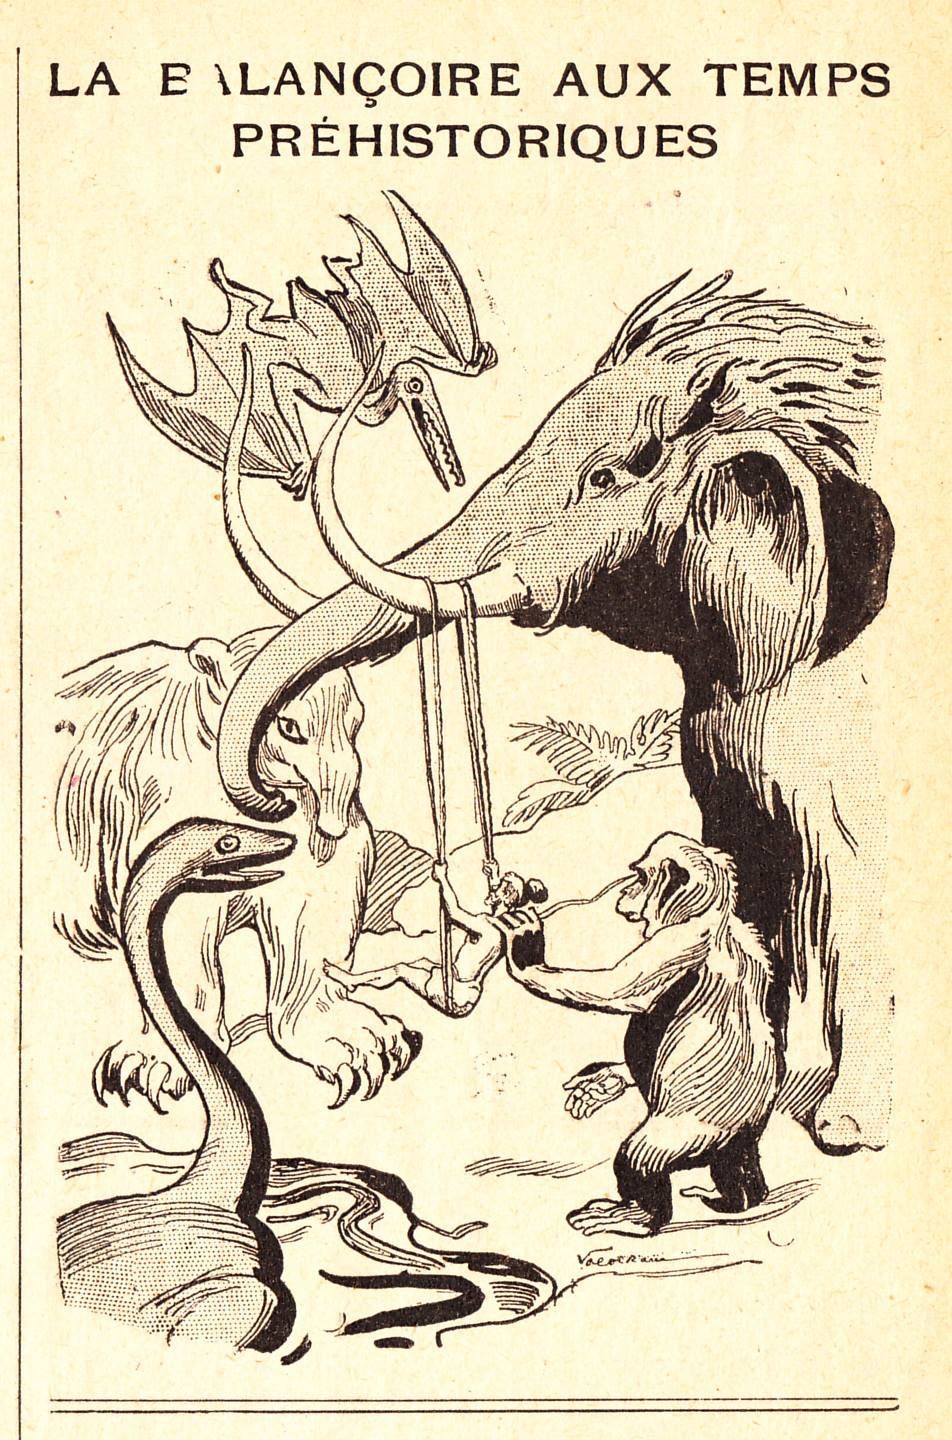 "La balançoire aux temps préhistoriques" par Valvérane (1905)